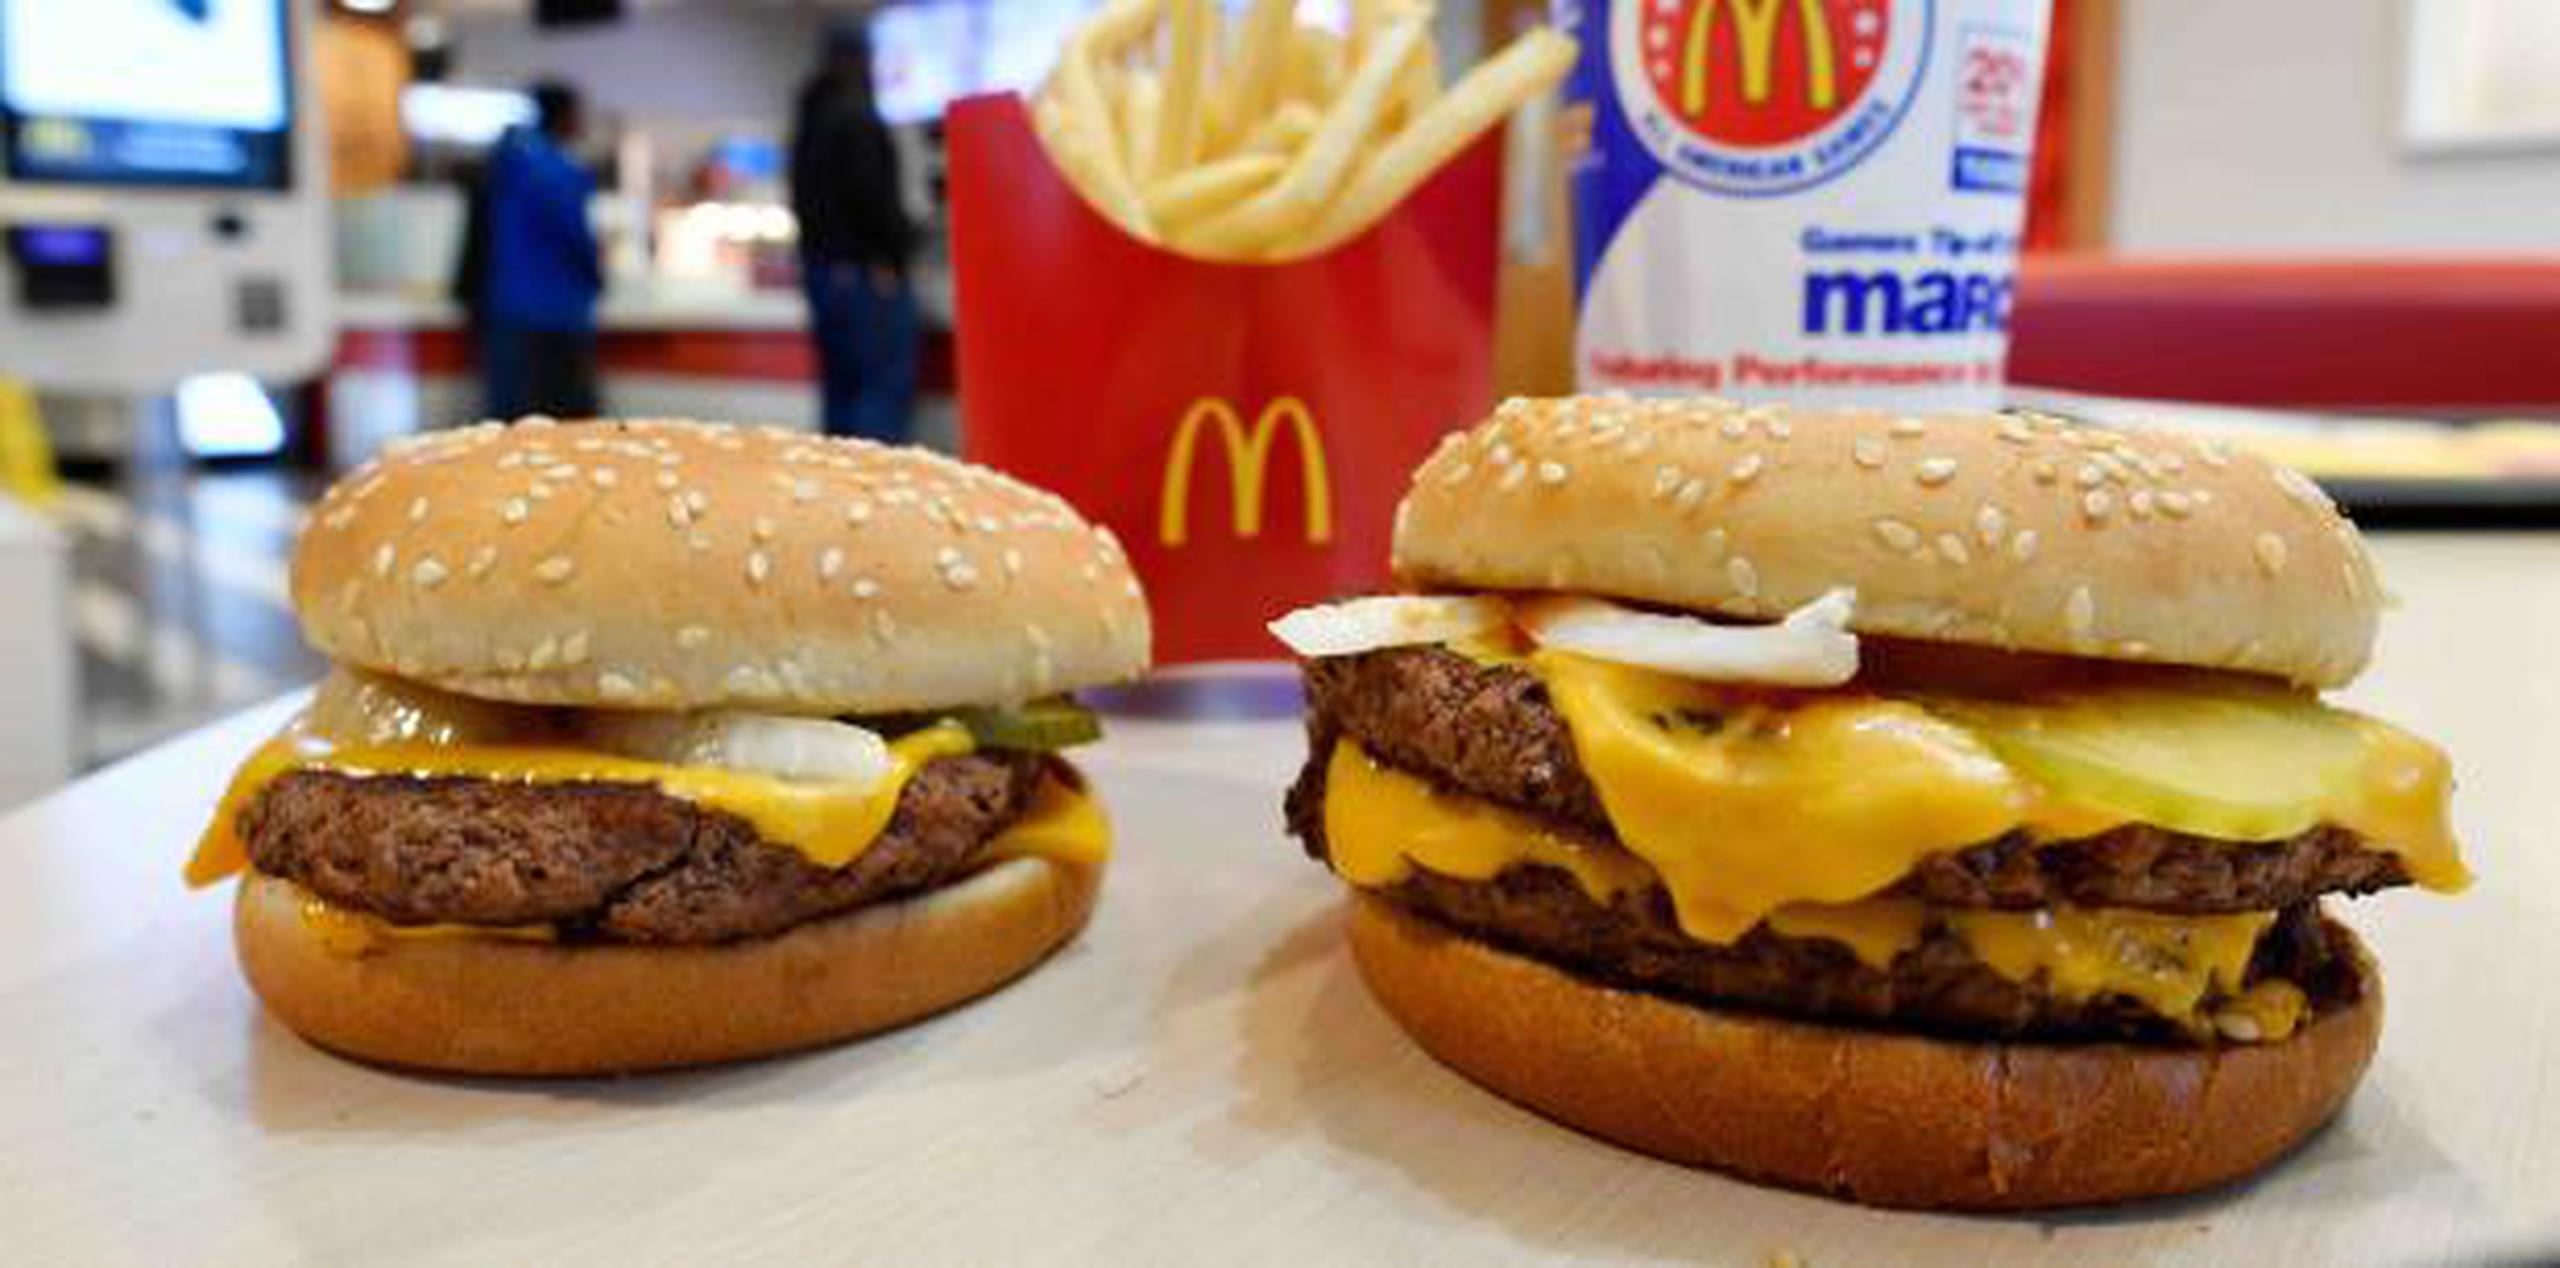 De forma gradual, McDonald's ha eliminado los preservativos de su menú a lo largo de varios años a fin de llegar a compradores más conscientes de lo que comen. (AP)